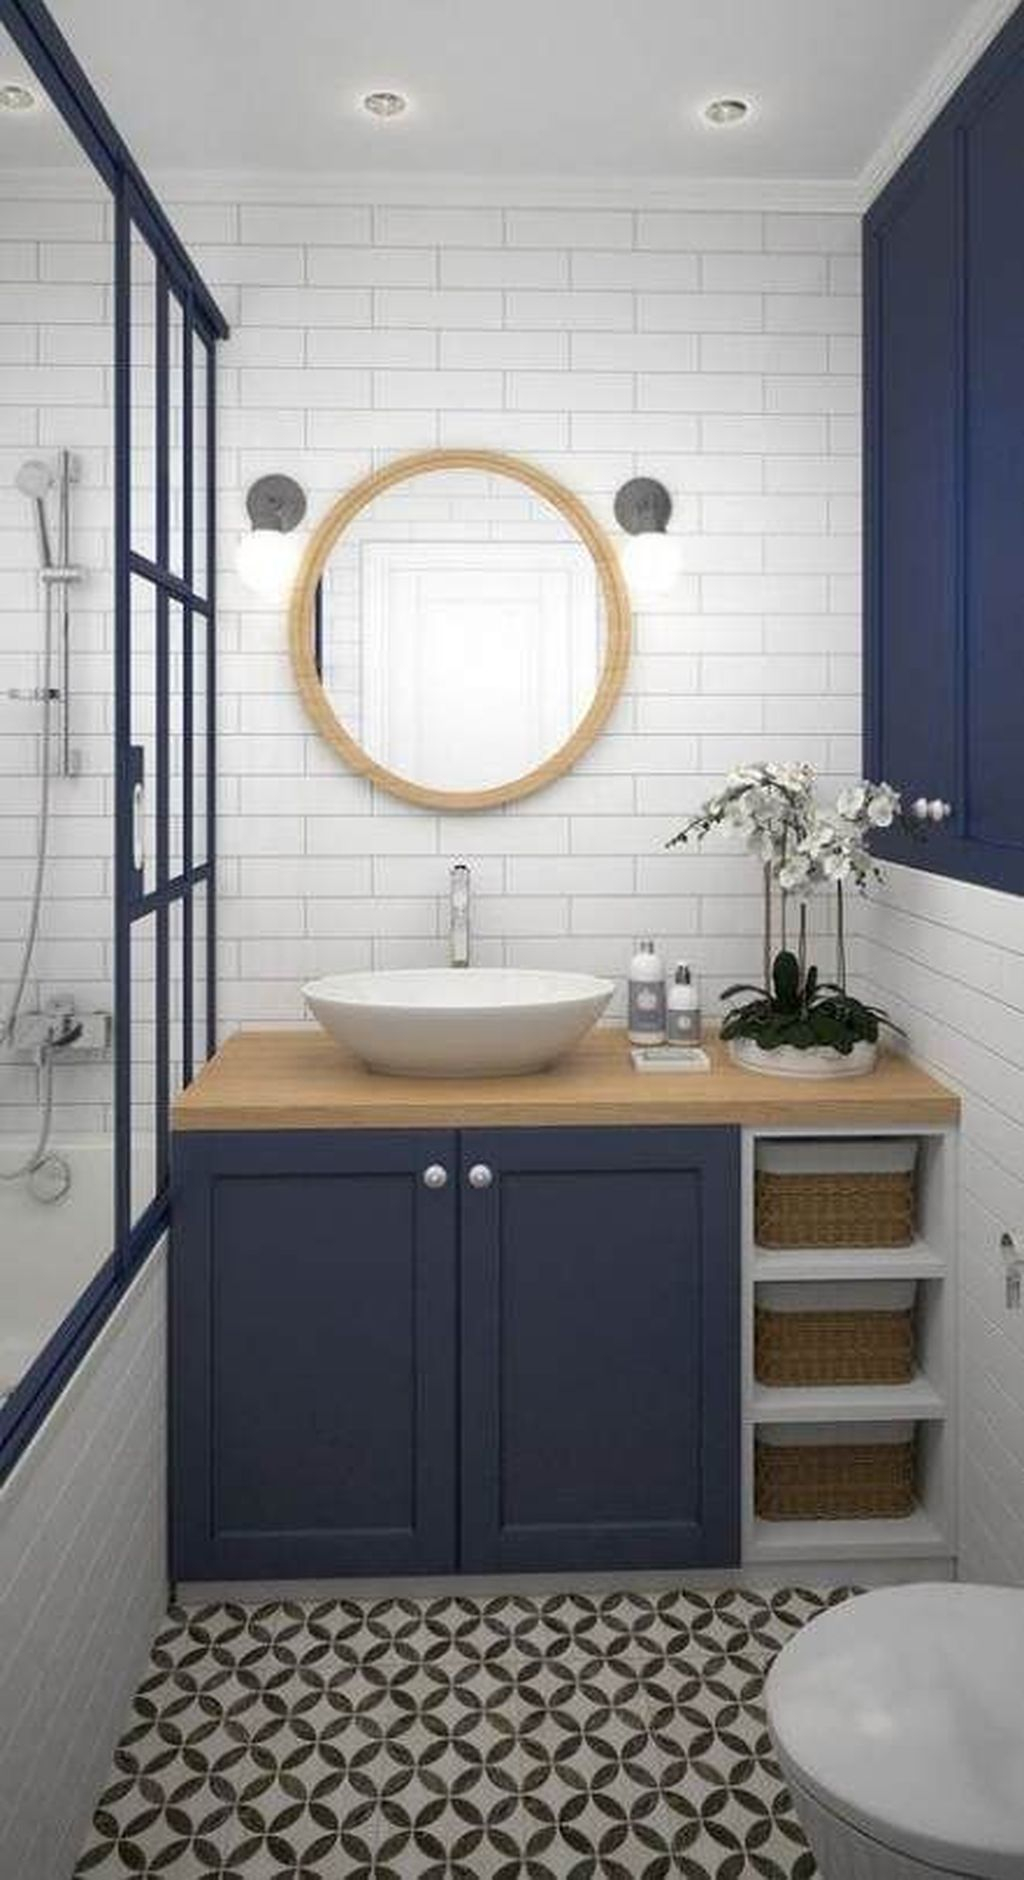 Elegant Bathroom Sink Decorating Ideas For Bathroom13